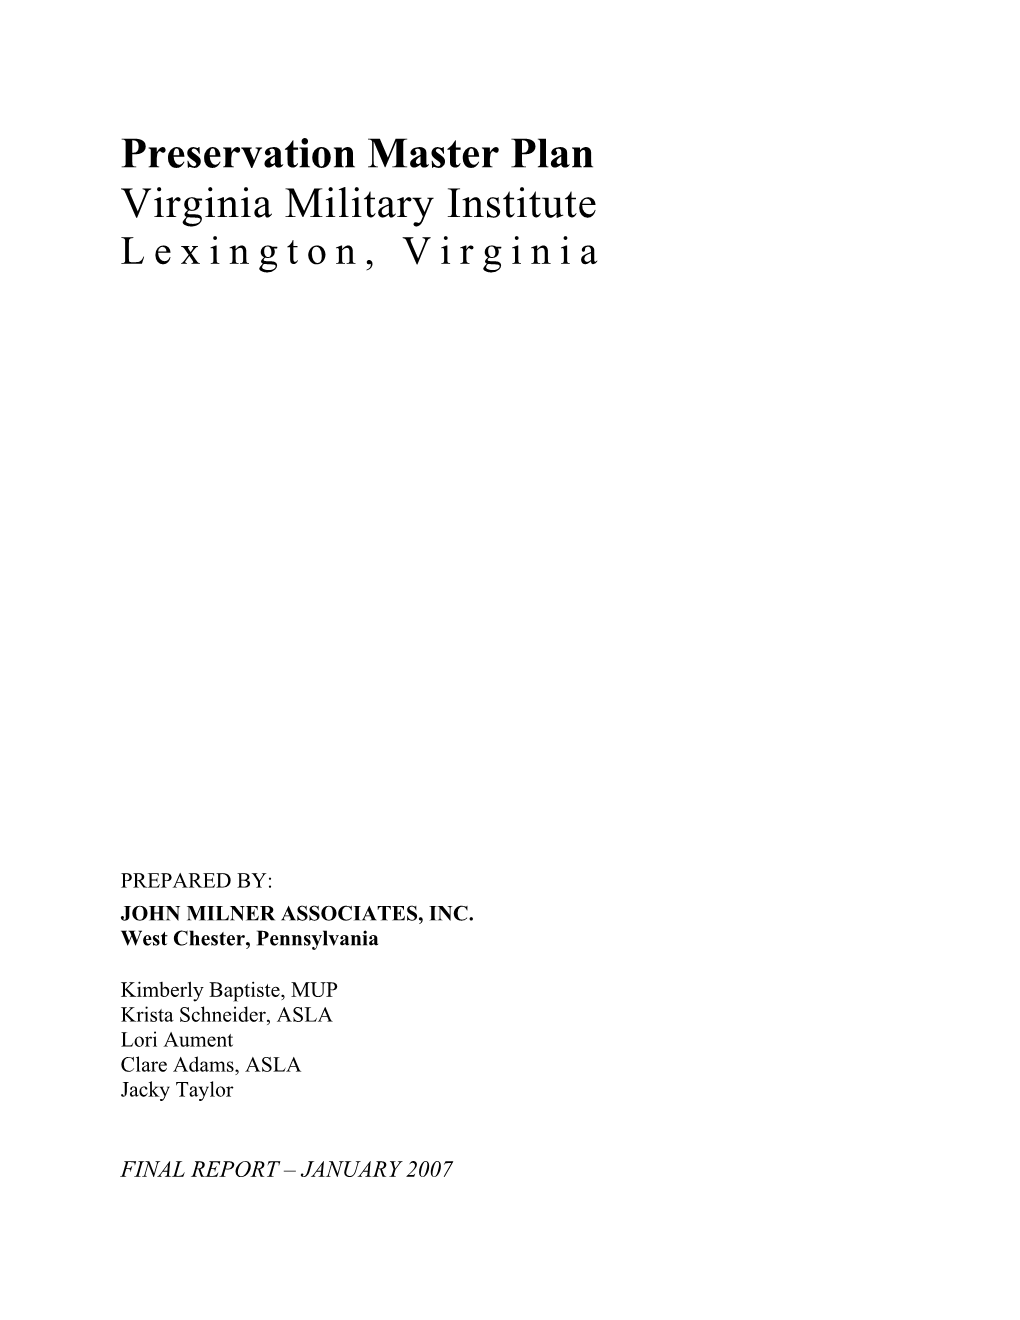 Preservation Master Plan Virginia Military Institute Lexington, Virginia